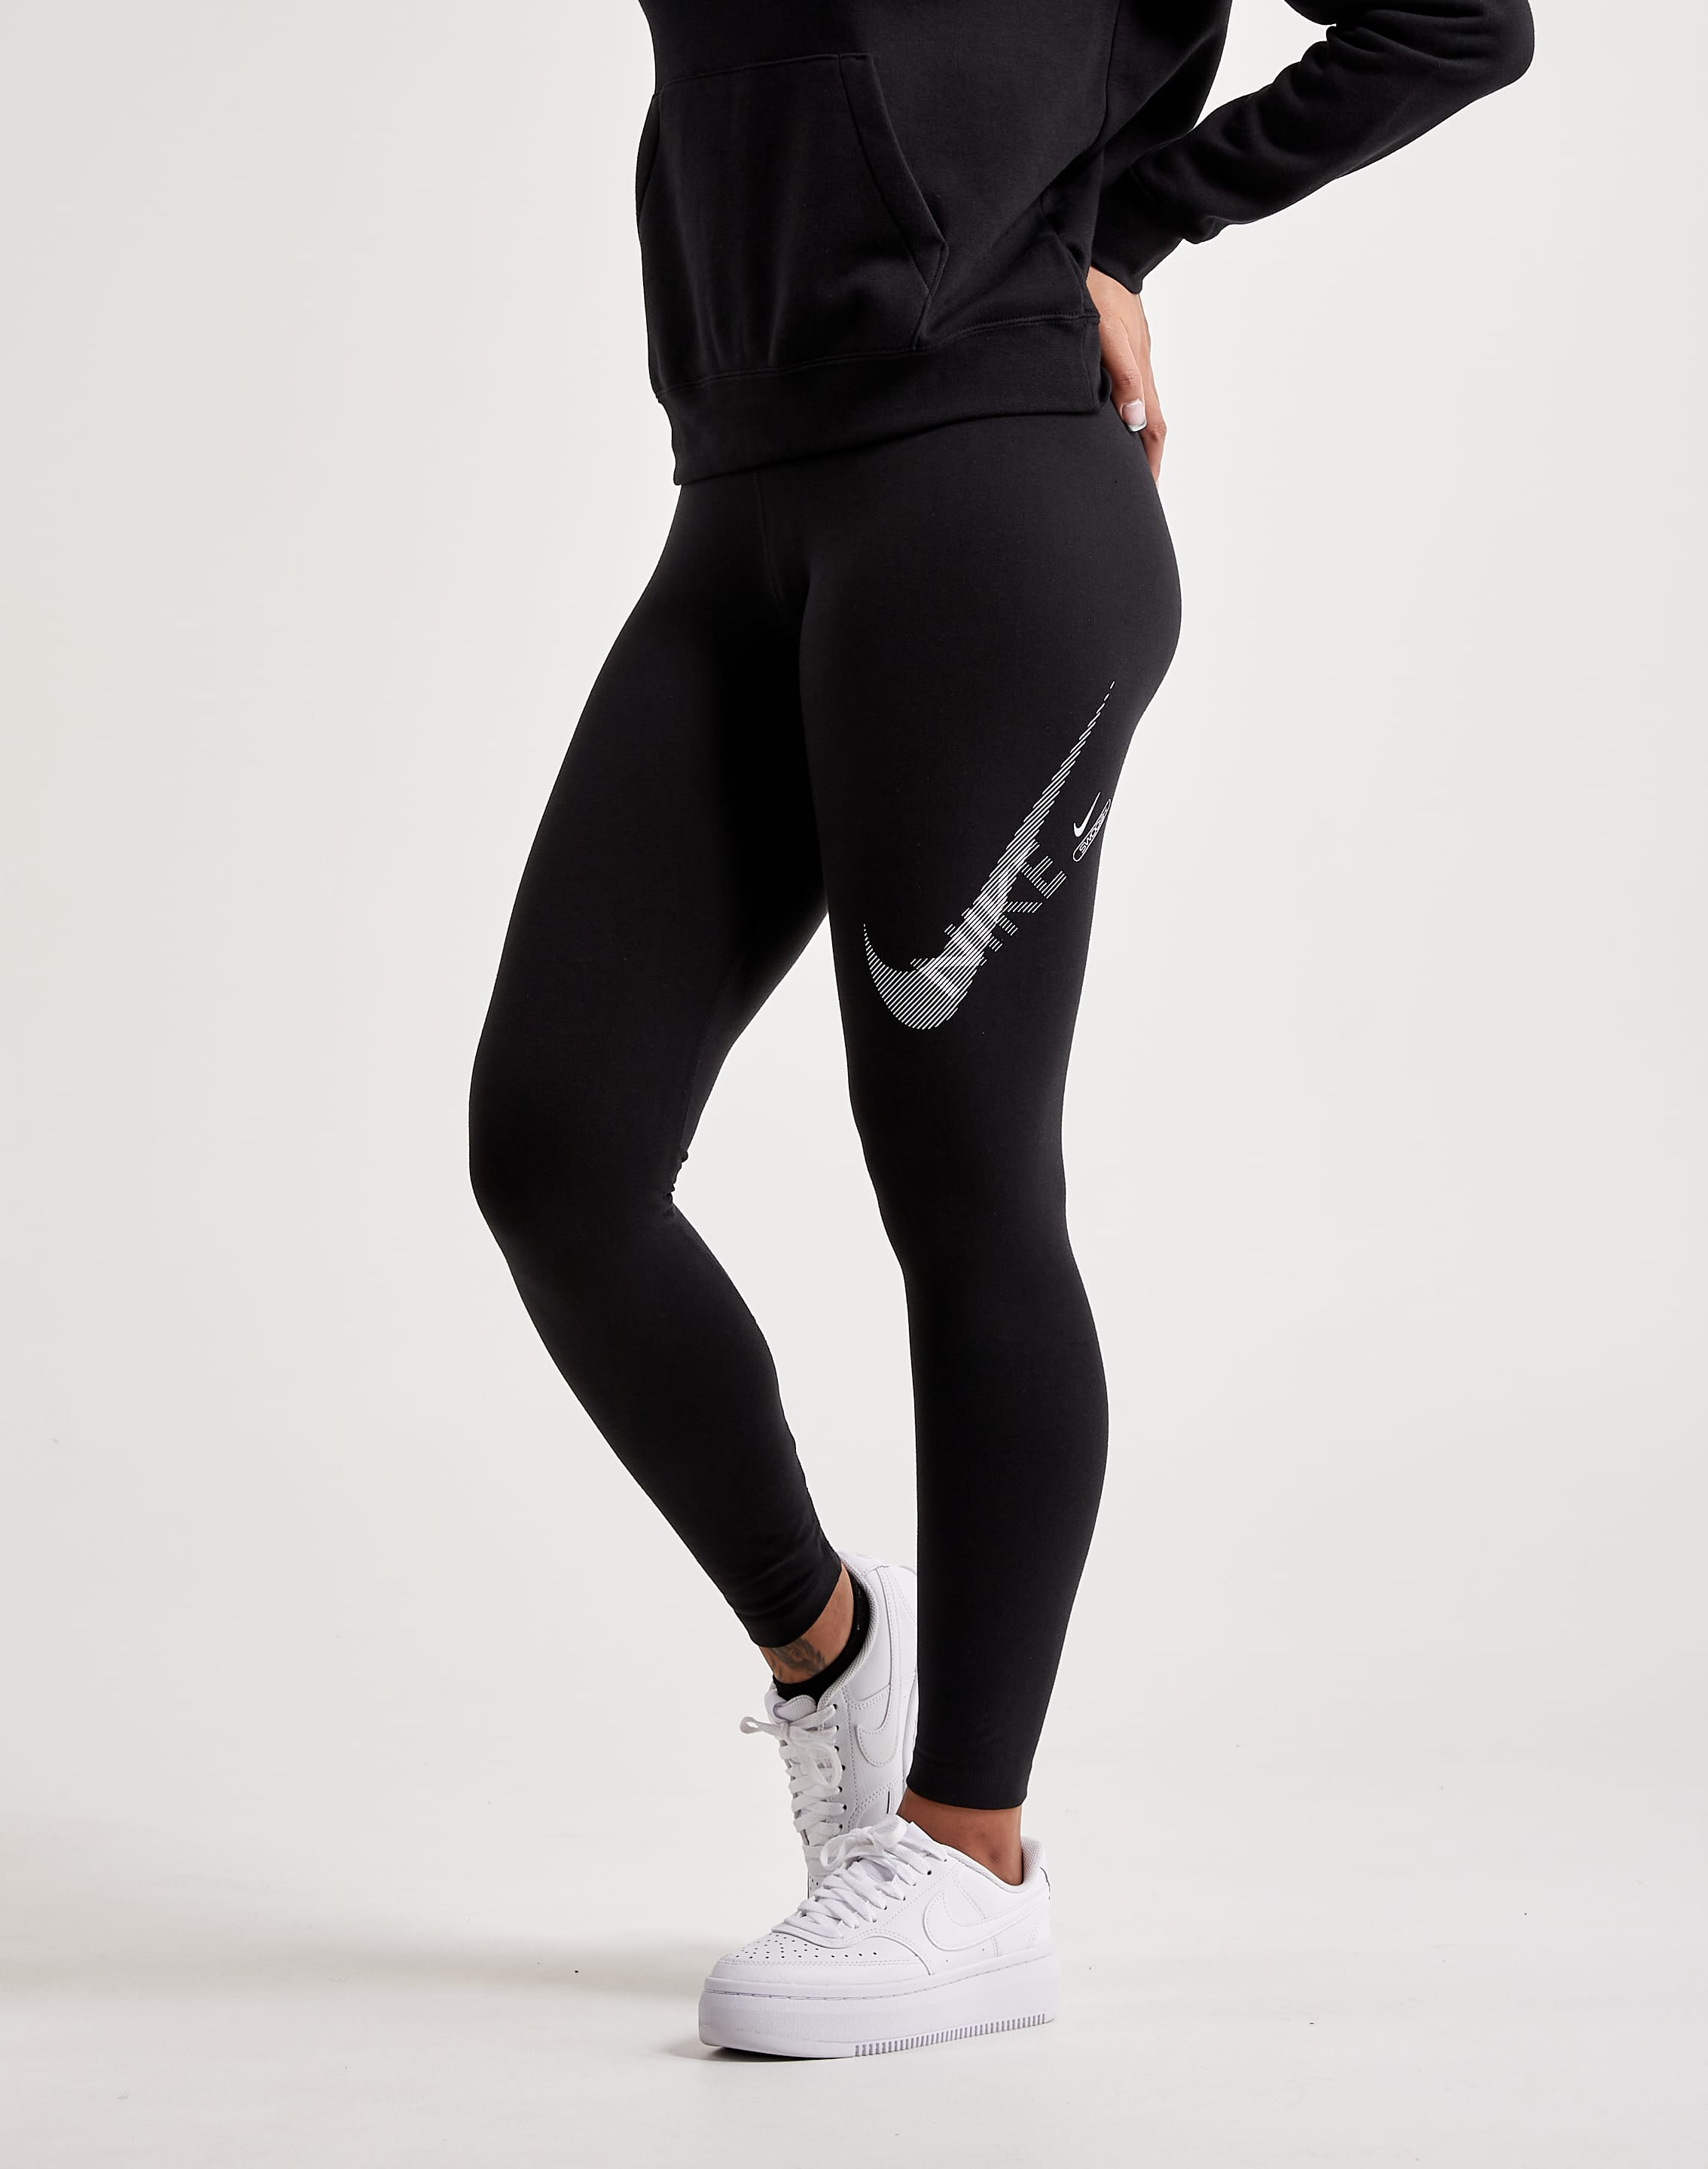 Buy Nike Women's Sportswear Swoosh High-Waisted Leggings Online